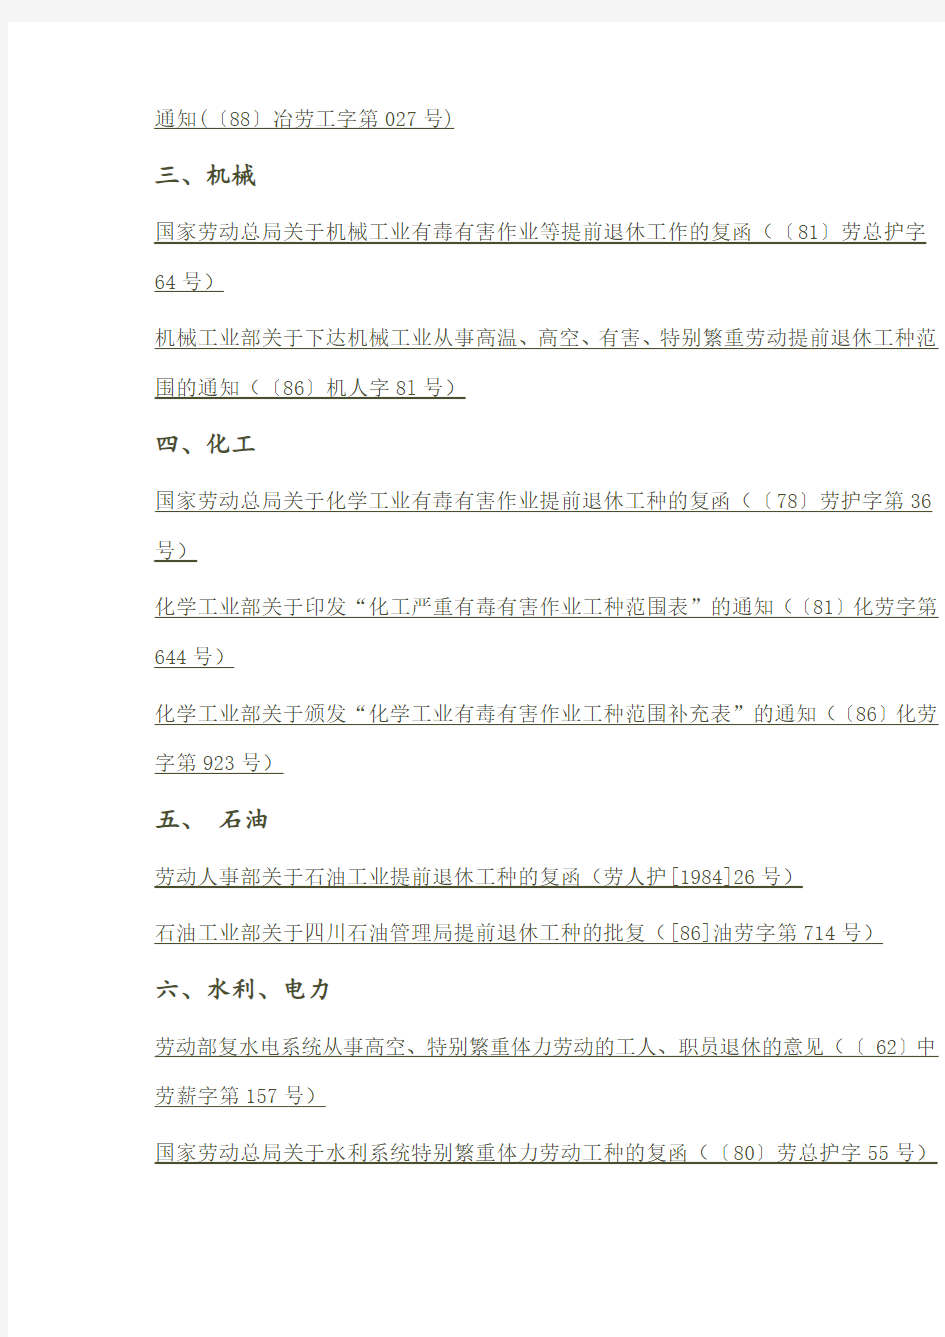 中华人民共和国各行业特殊工种名录大全